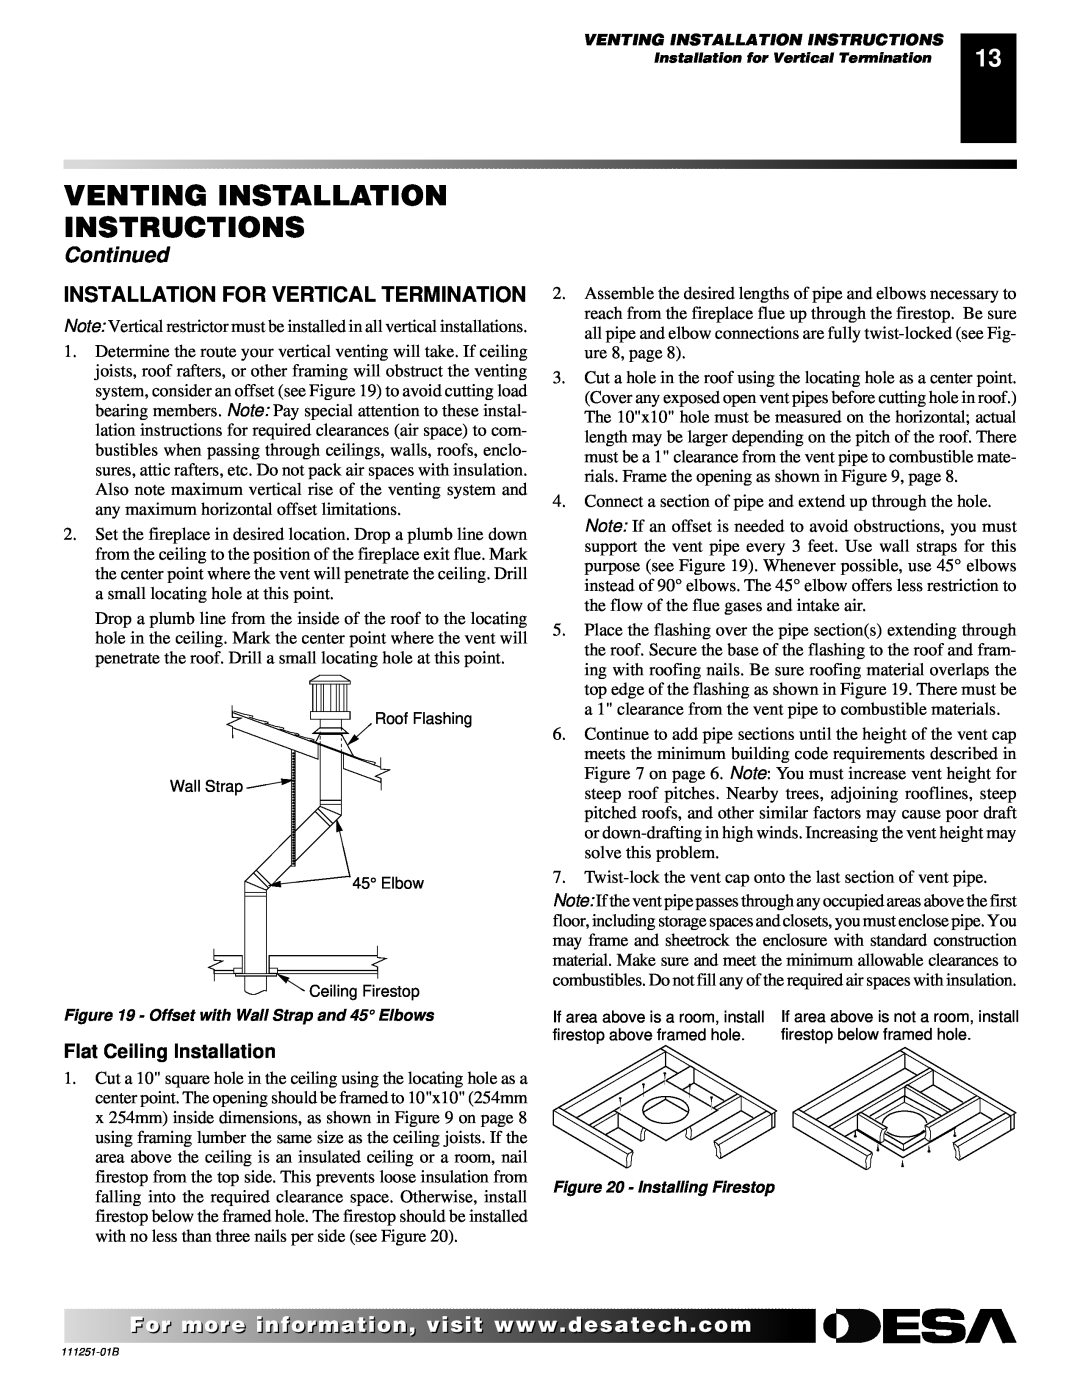 Desa (V)T36ENA installation manual Venting Installation Instructions, Continued, Installation For Vertical Termination 